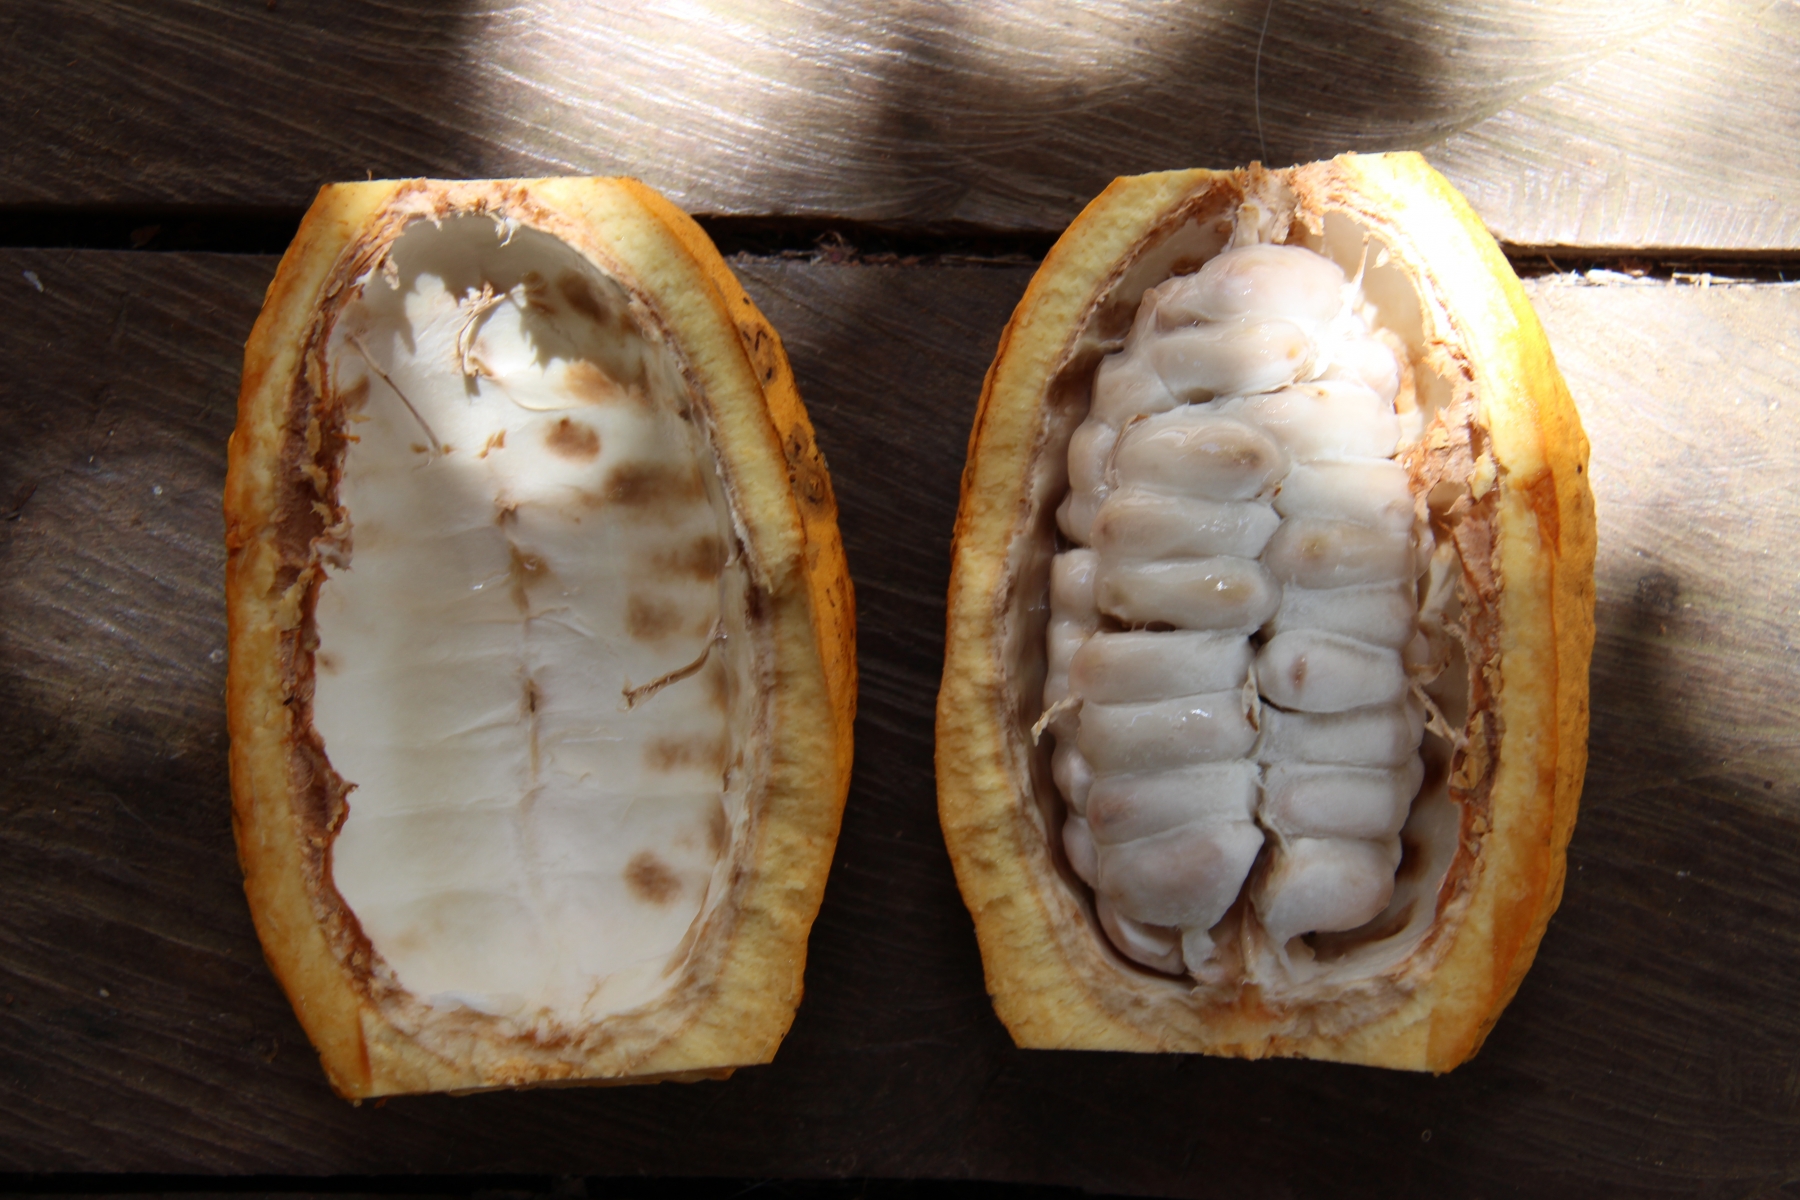 Kakaofrucht von innen - frisch aufgeschnitten